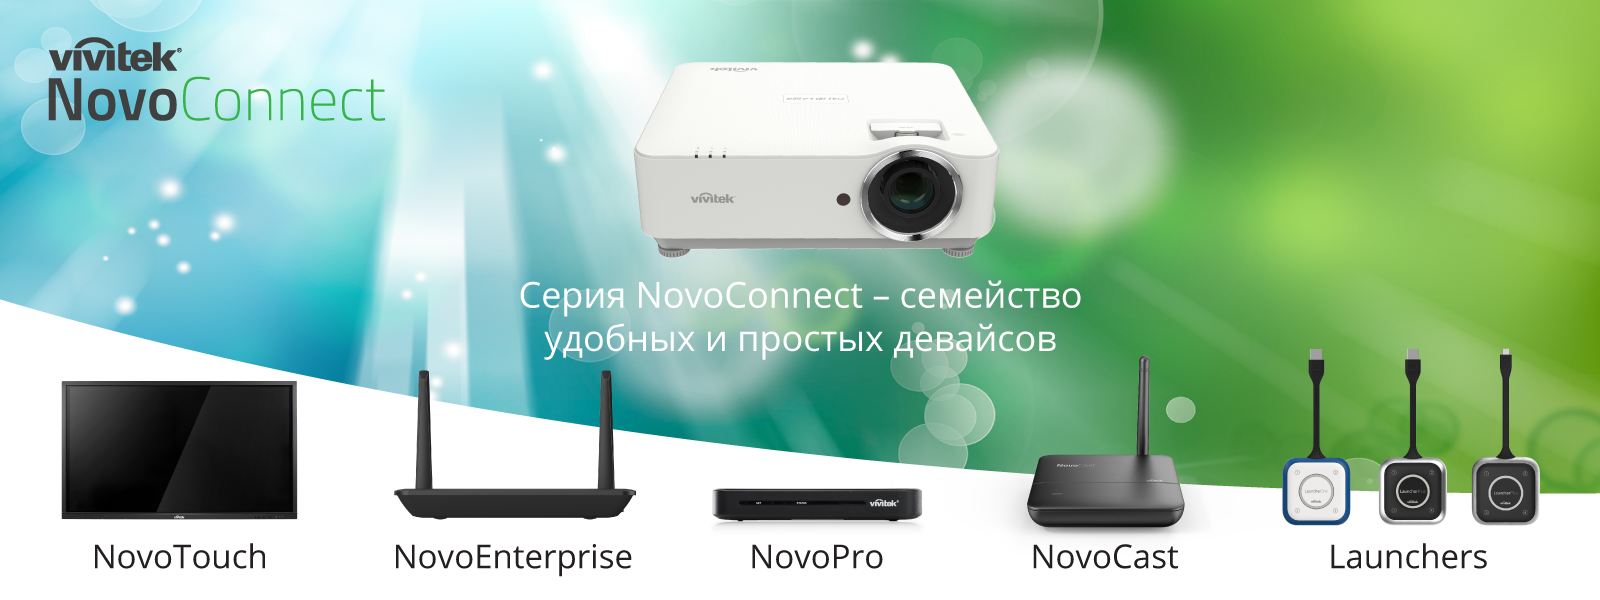 Vivitek_NovoConnect_application-shots_v01_02_asa